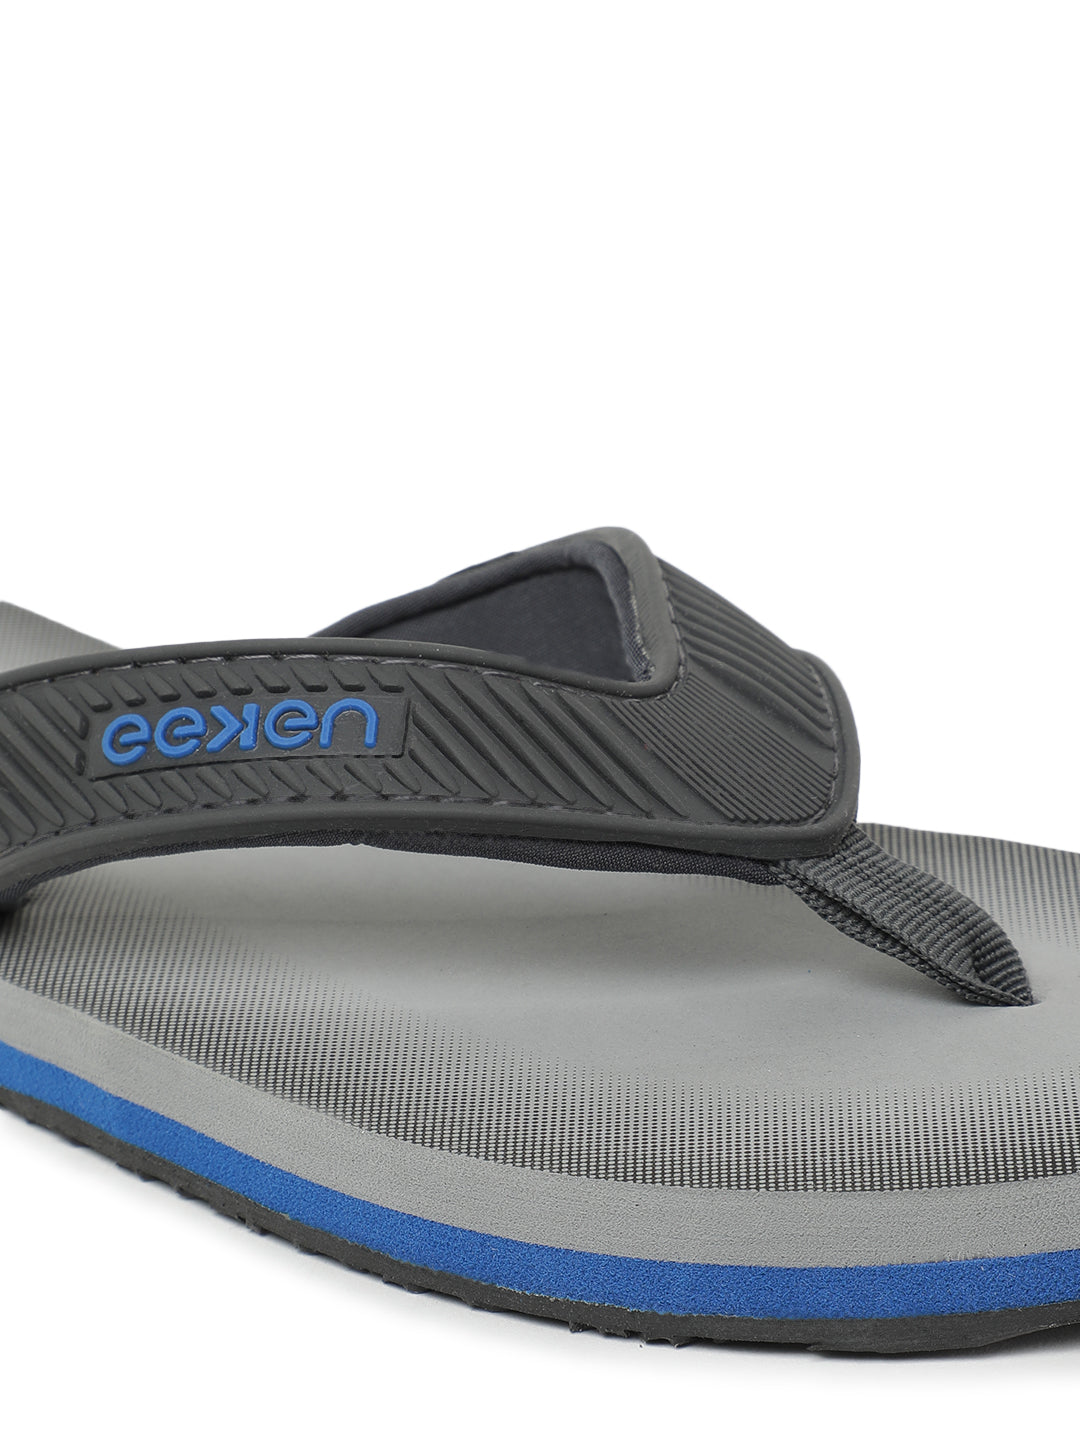 Eeken EFBG2028 Grey Classic Flip Flops For Men